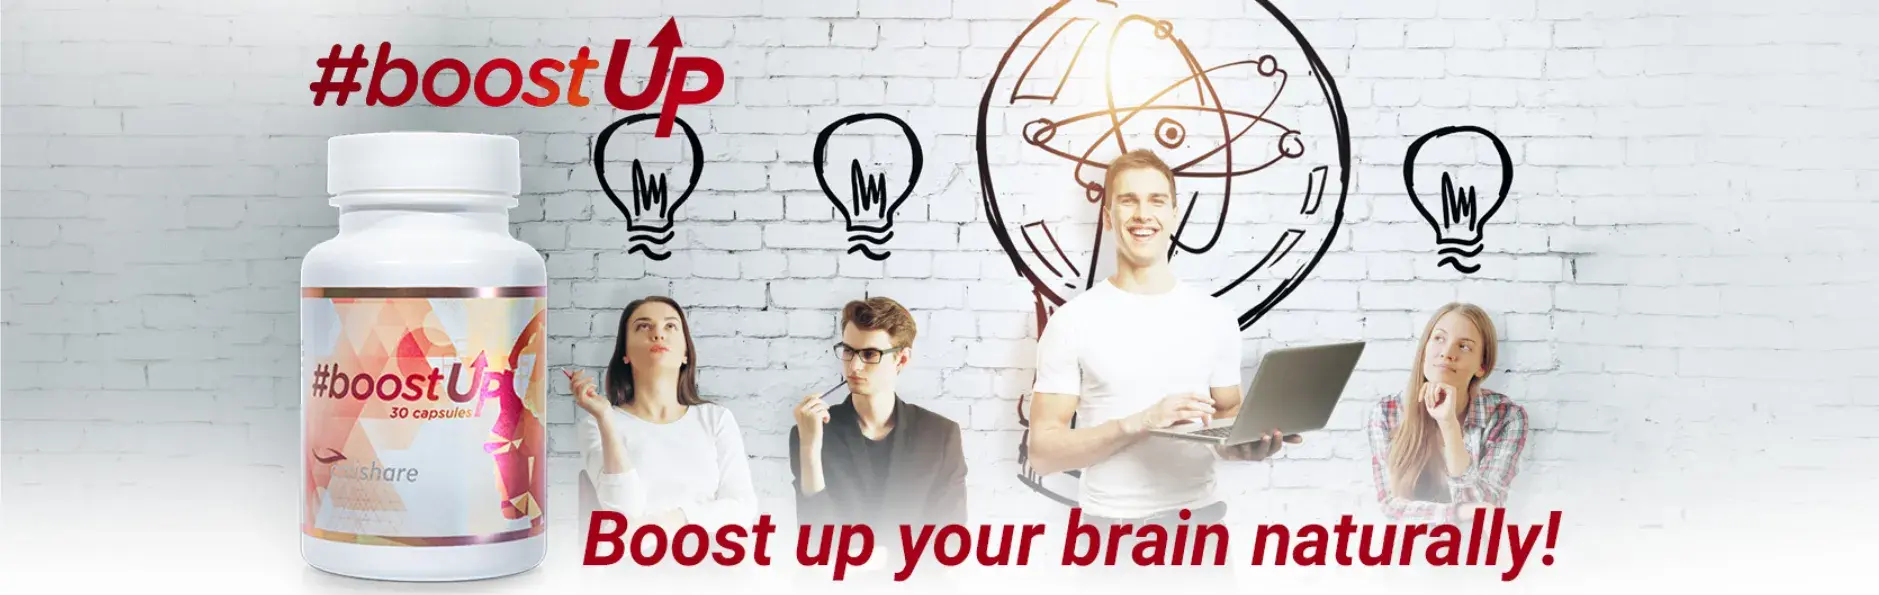 #boostUp - Razvijte svoje možgane naravno